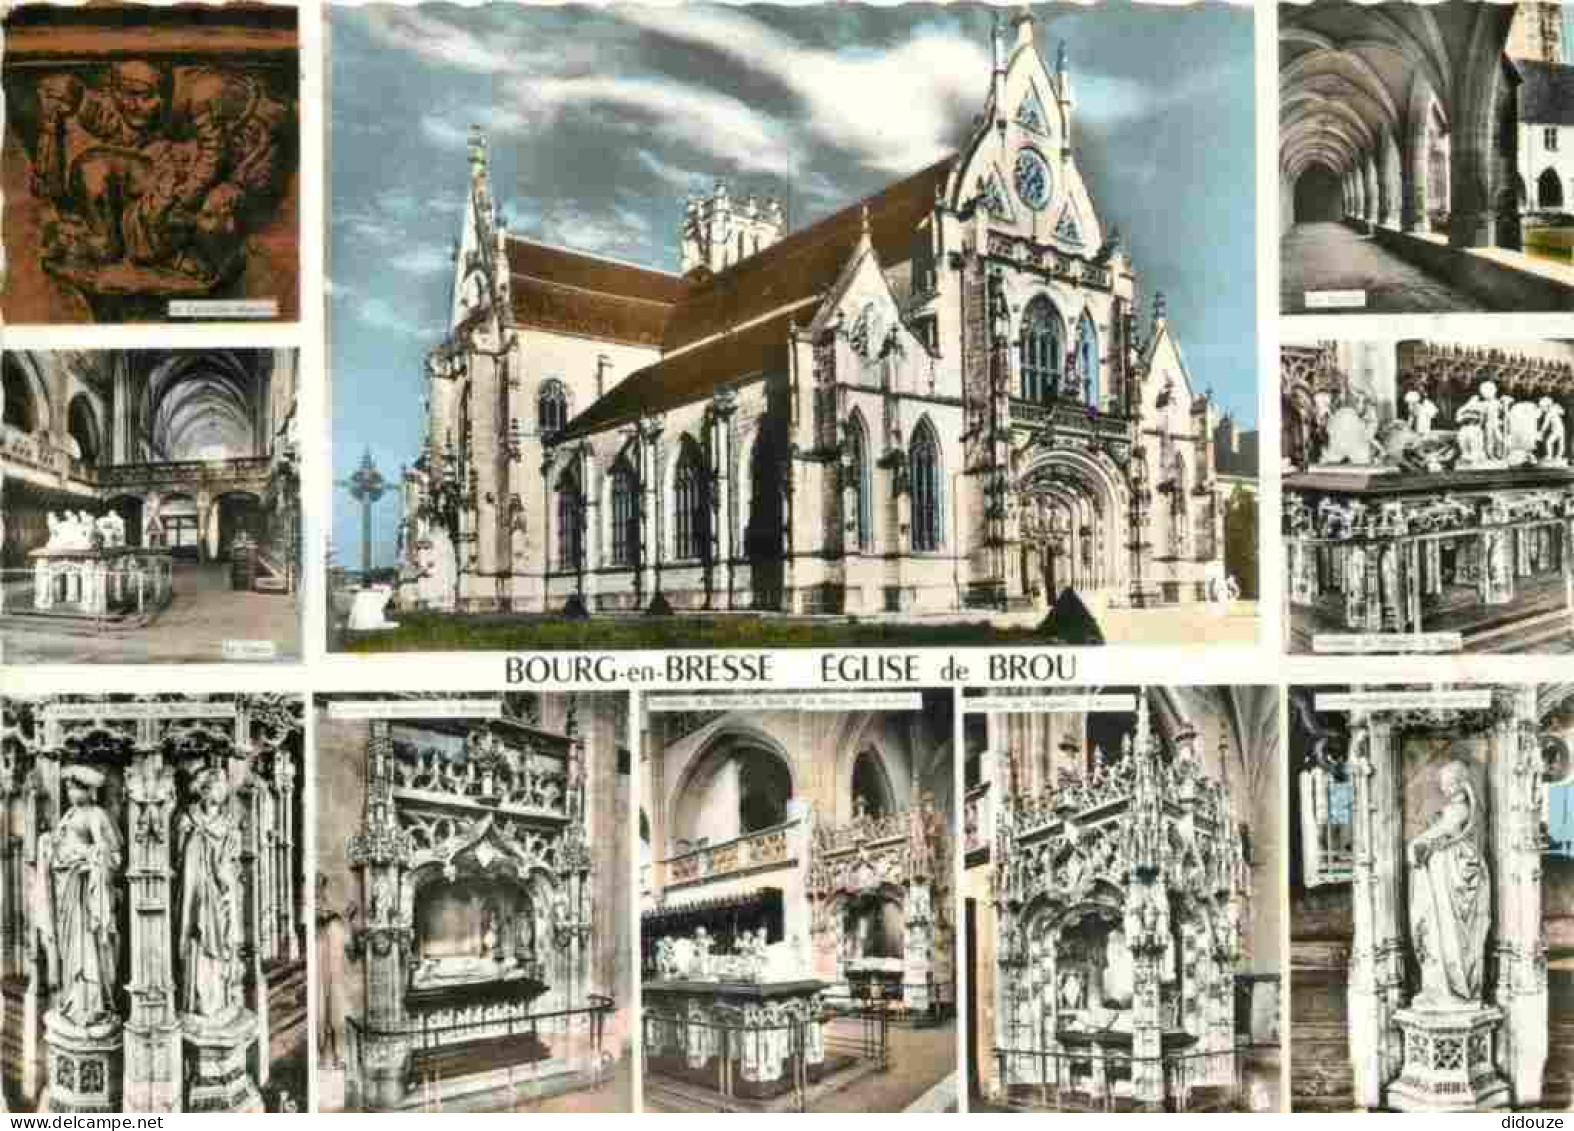 01 - Bourg En Bresse - Eglise De Brou - Intérieur De L'Eglise De Brou - Carte Dentelée - CPSM Grand Format - Voir Scans  - Eglise De Brou